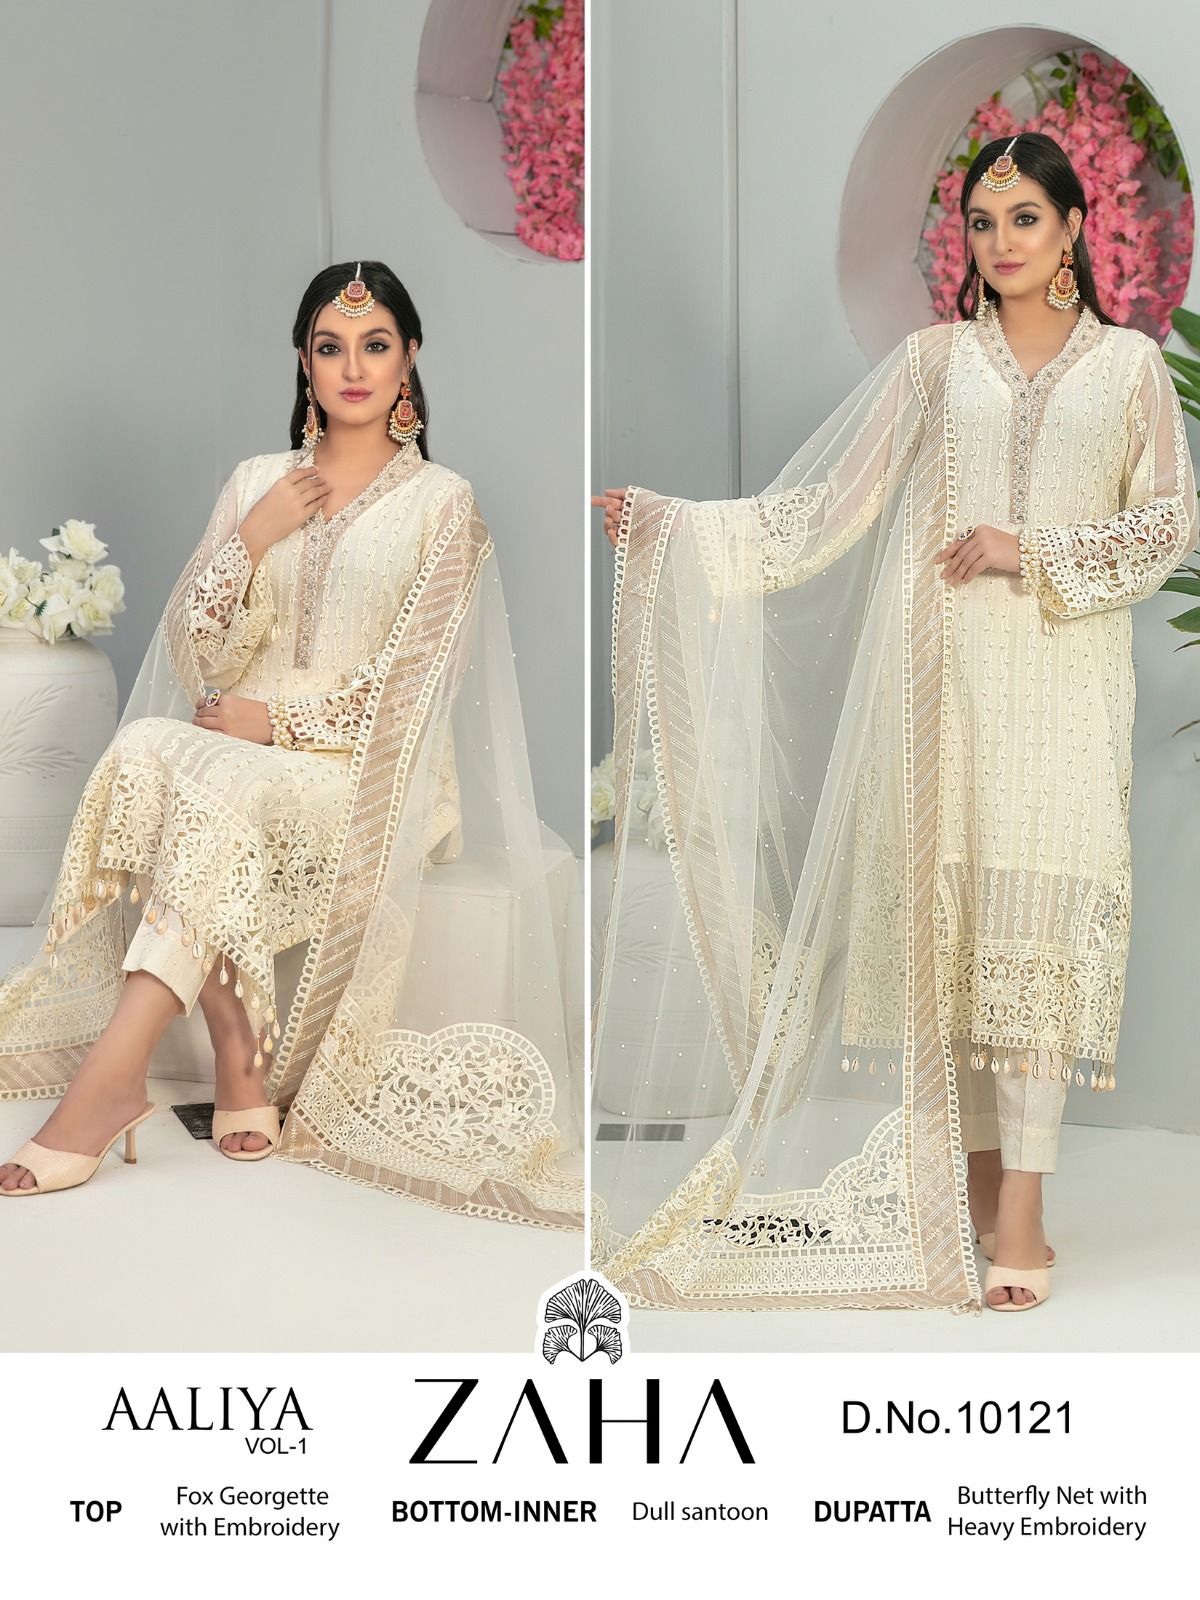 zaha aaliya vol 1 d no 10120 to 10122 georgette georgeous look salwar suit catalog